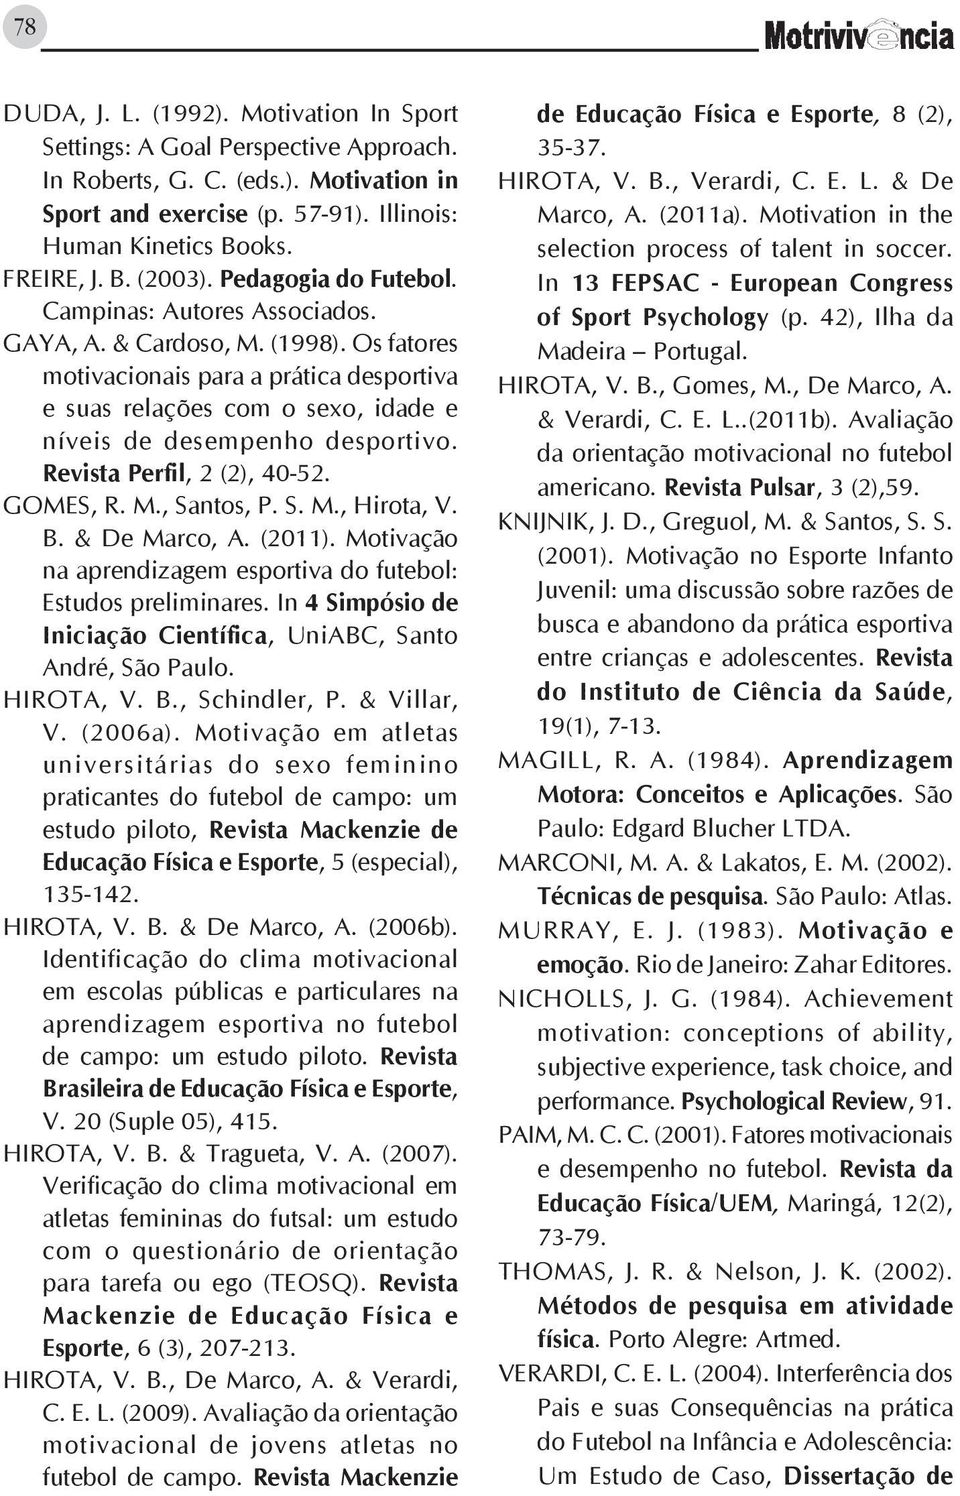 Os fatores motivacionais para a prática desportiva e suas relações com o sexo, idade e níveis de desempenho desportivo. Revista Perfil, 2 (2), 40-52. Gomes, R. M., Santos, P. S. M., Hirota, V. B.